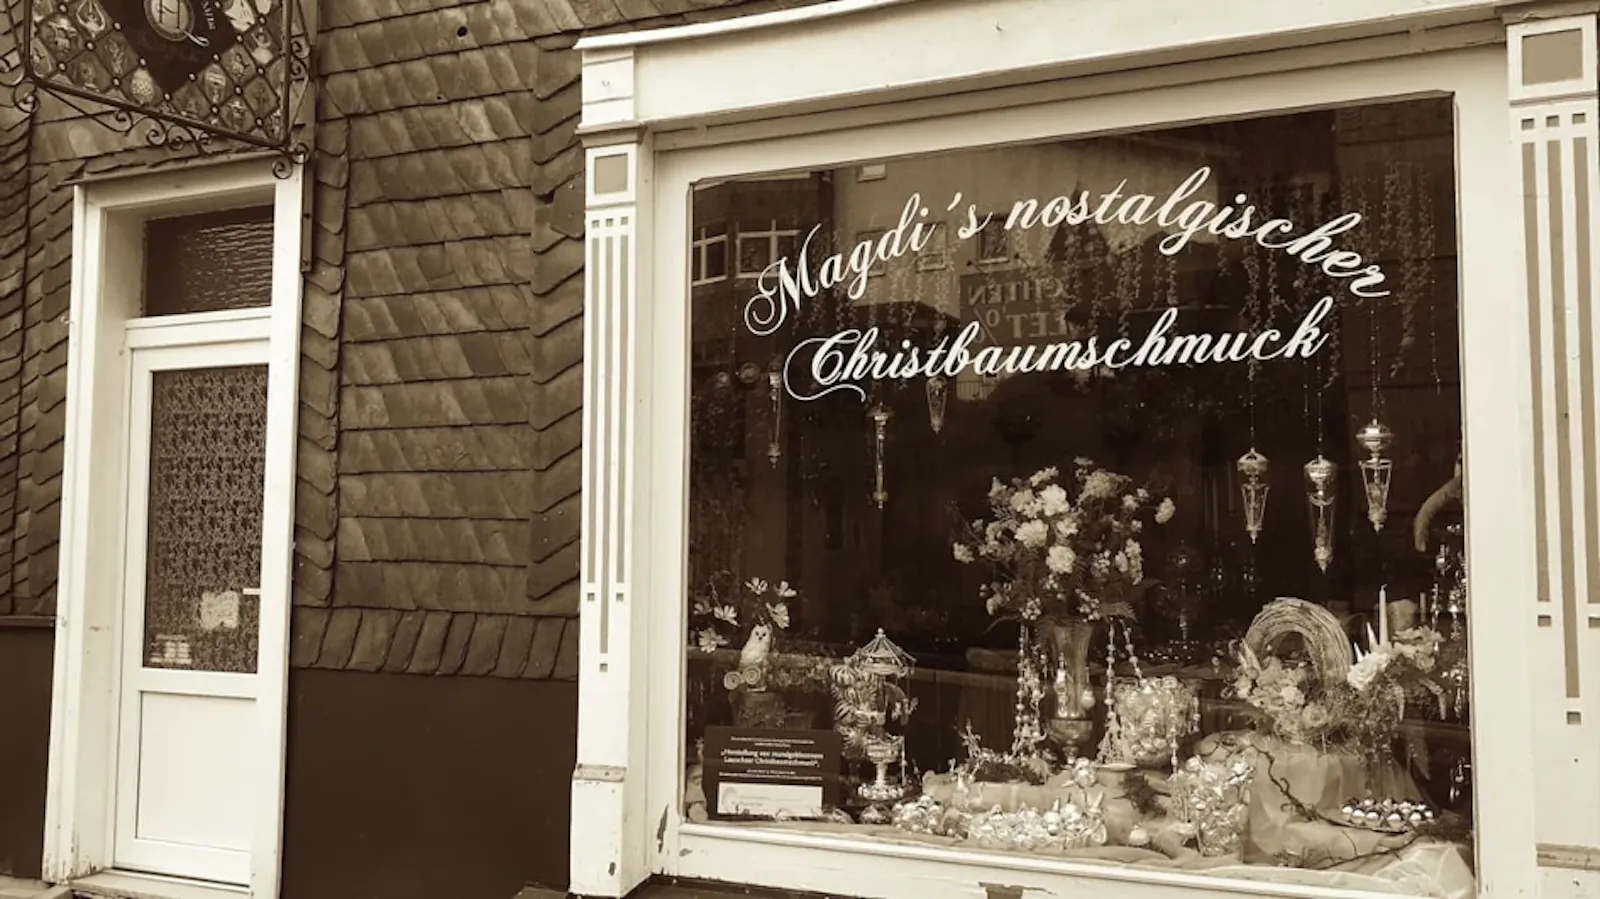 Frontansicht eines Geschäfts. Links eine Tür, rechts ein fast bodentiefes großes Schaufenster mit der Aufschrift "Magdi's Nostalgischer Christbaumschmuck". Silberne Weihnachtskugeln in der Auslage